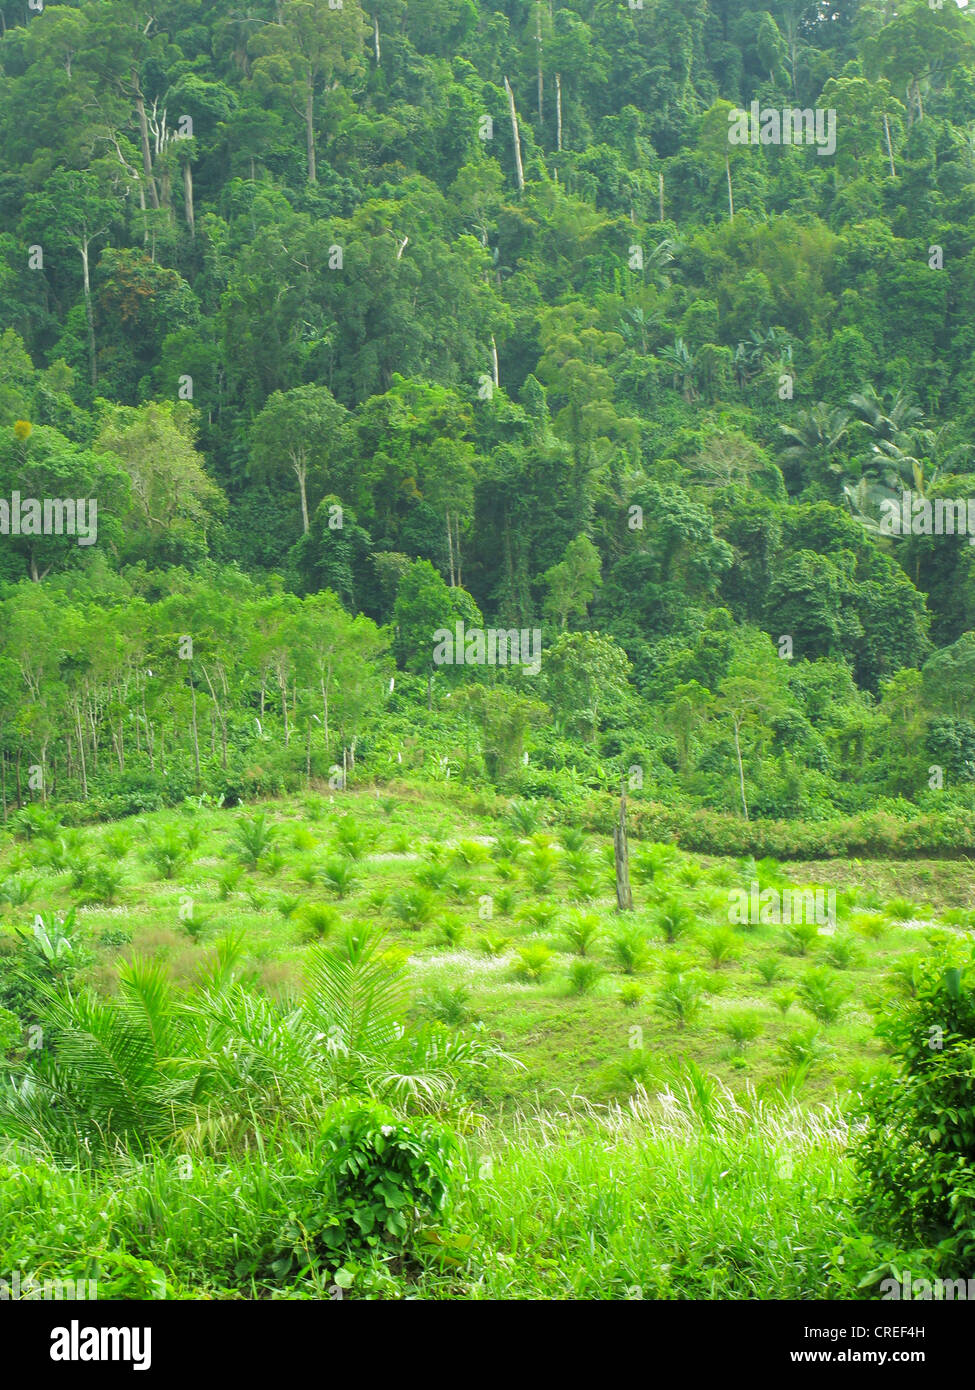 oil palm (Elaeis guineensis), plantation next to tropical rain forest, Thailand, Phuket Stock Photo